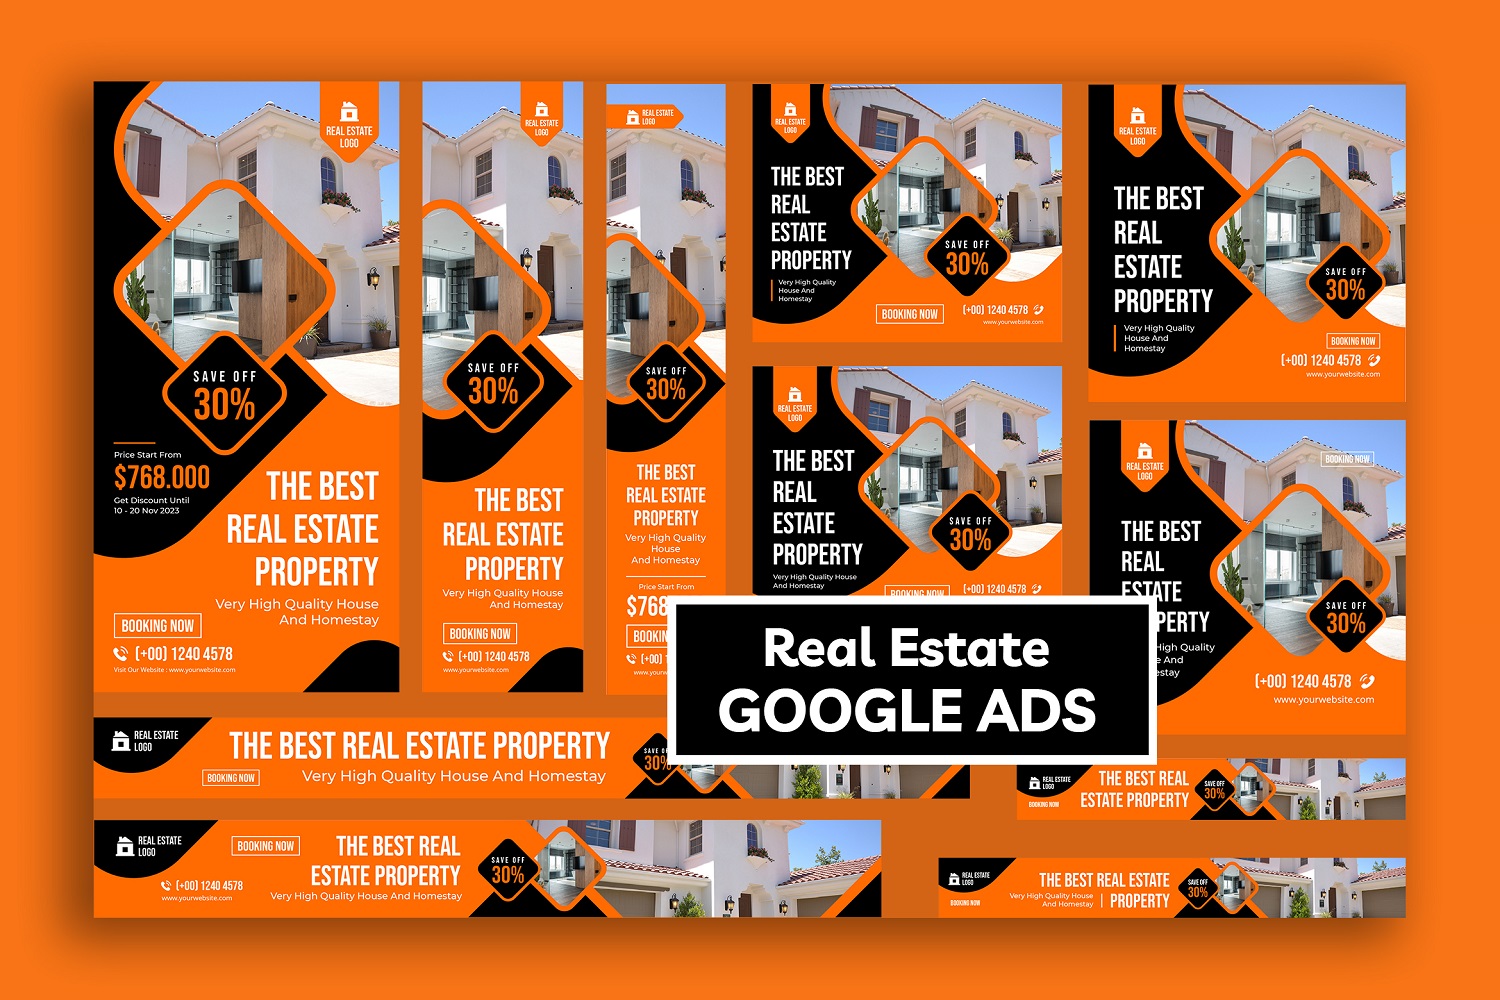 Real Estate Property Google Ads